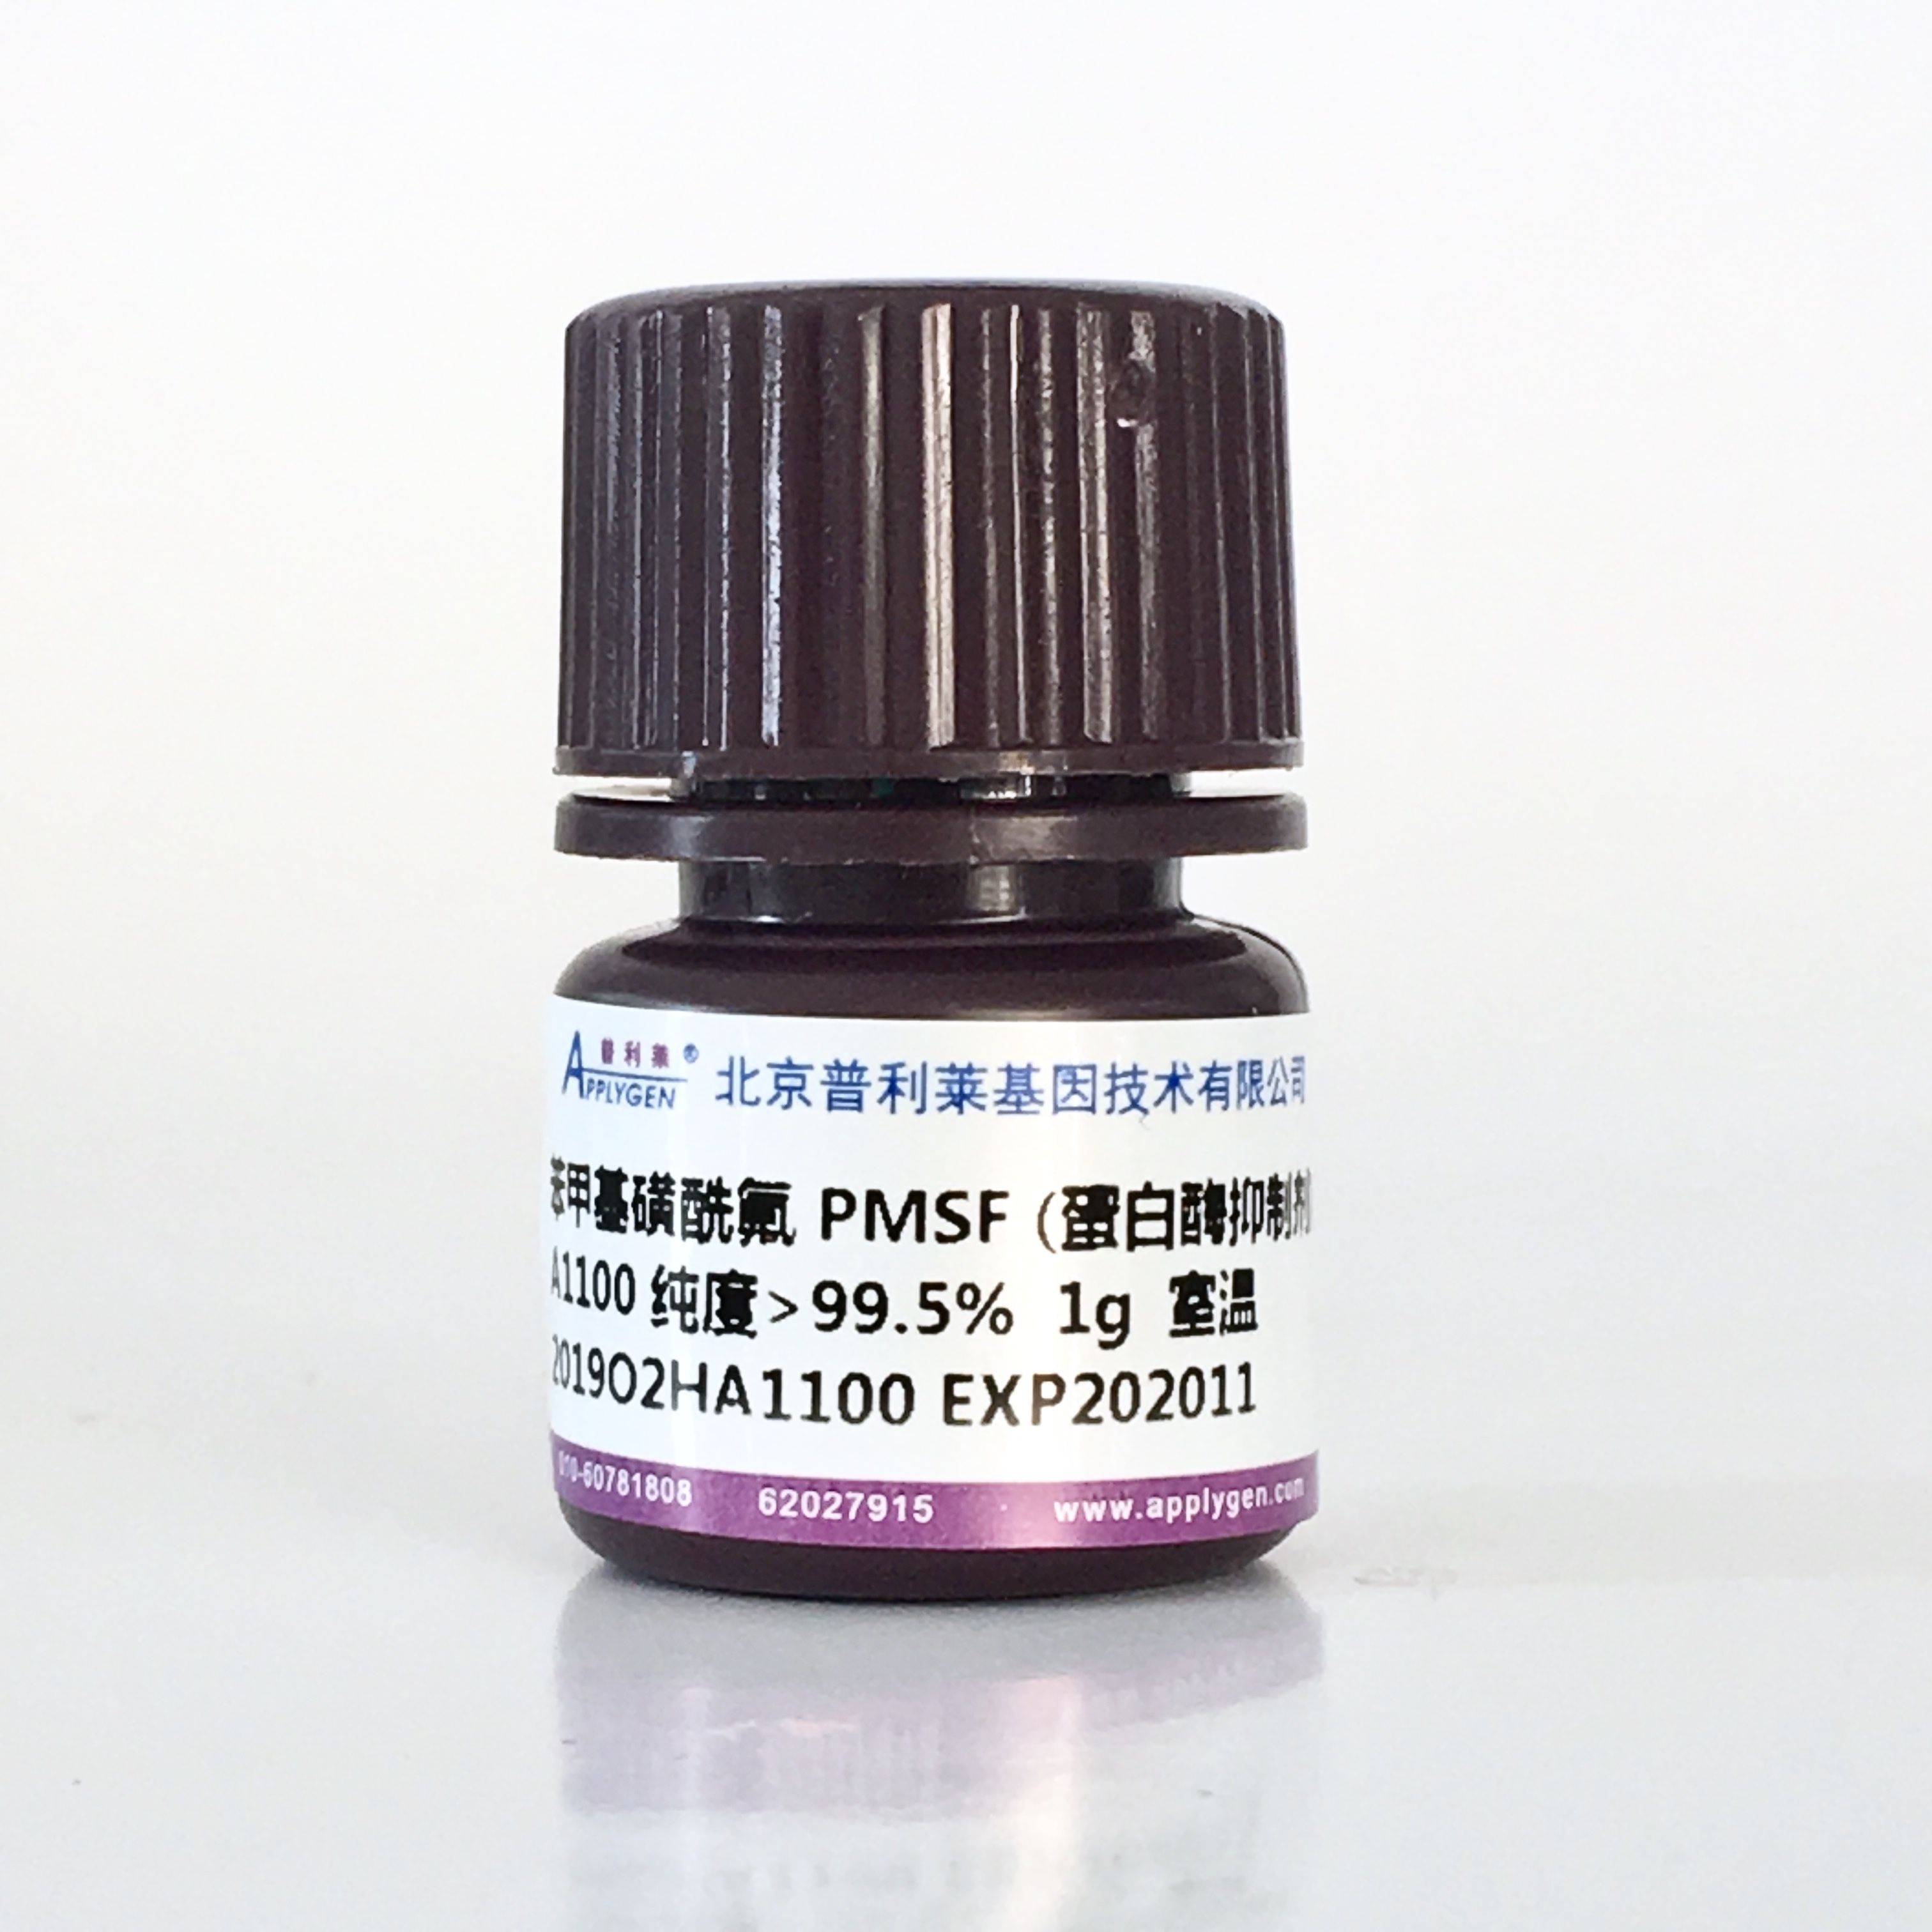 PMSF（蛋白酶抑制剂 ）A1100 厂家直销，提供OEM定制服务，大包装更优惠 